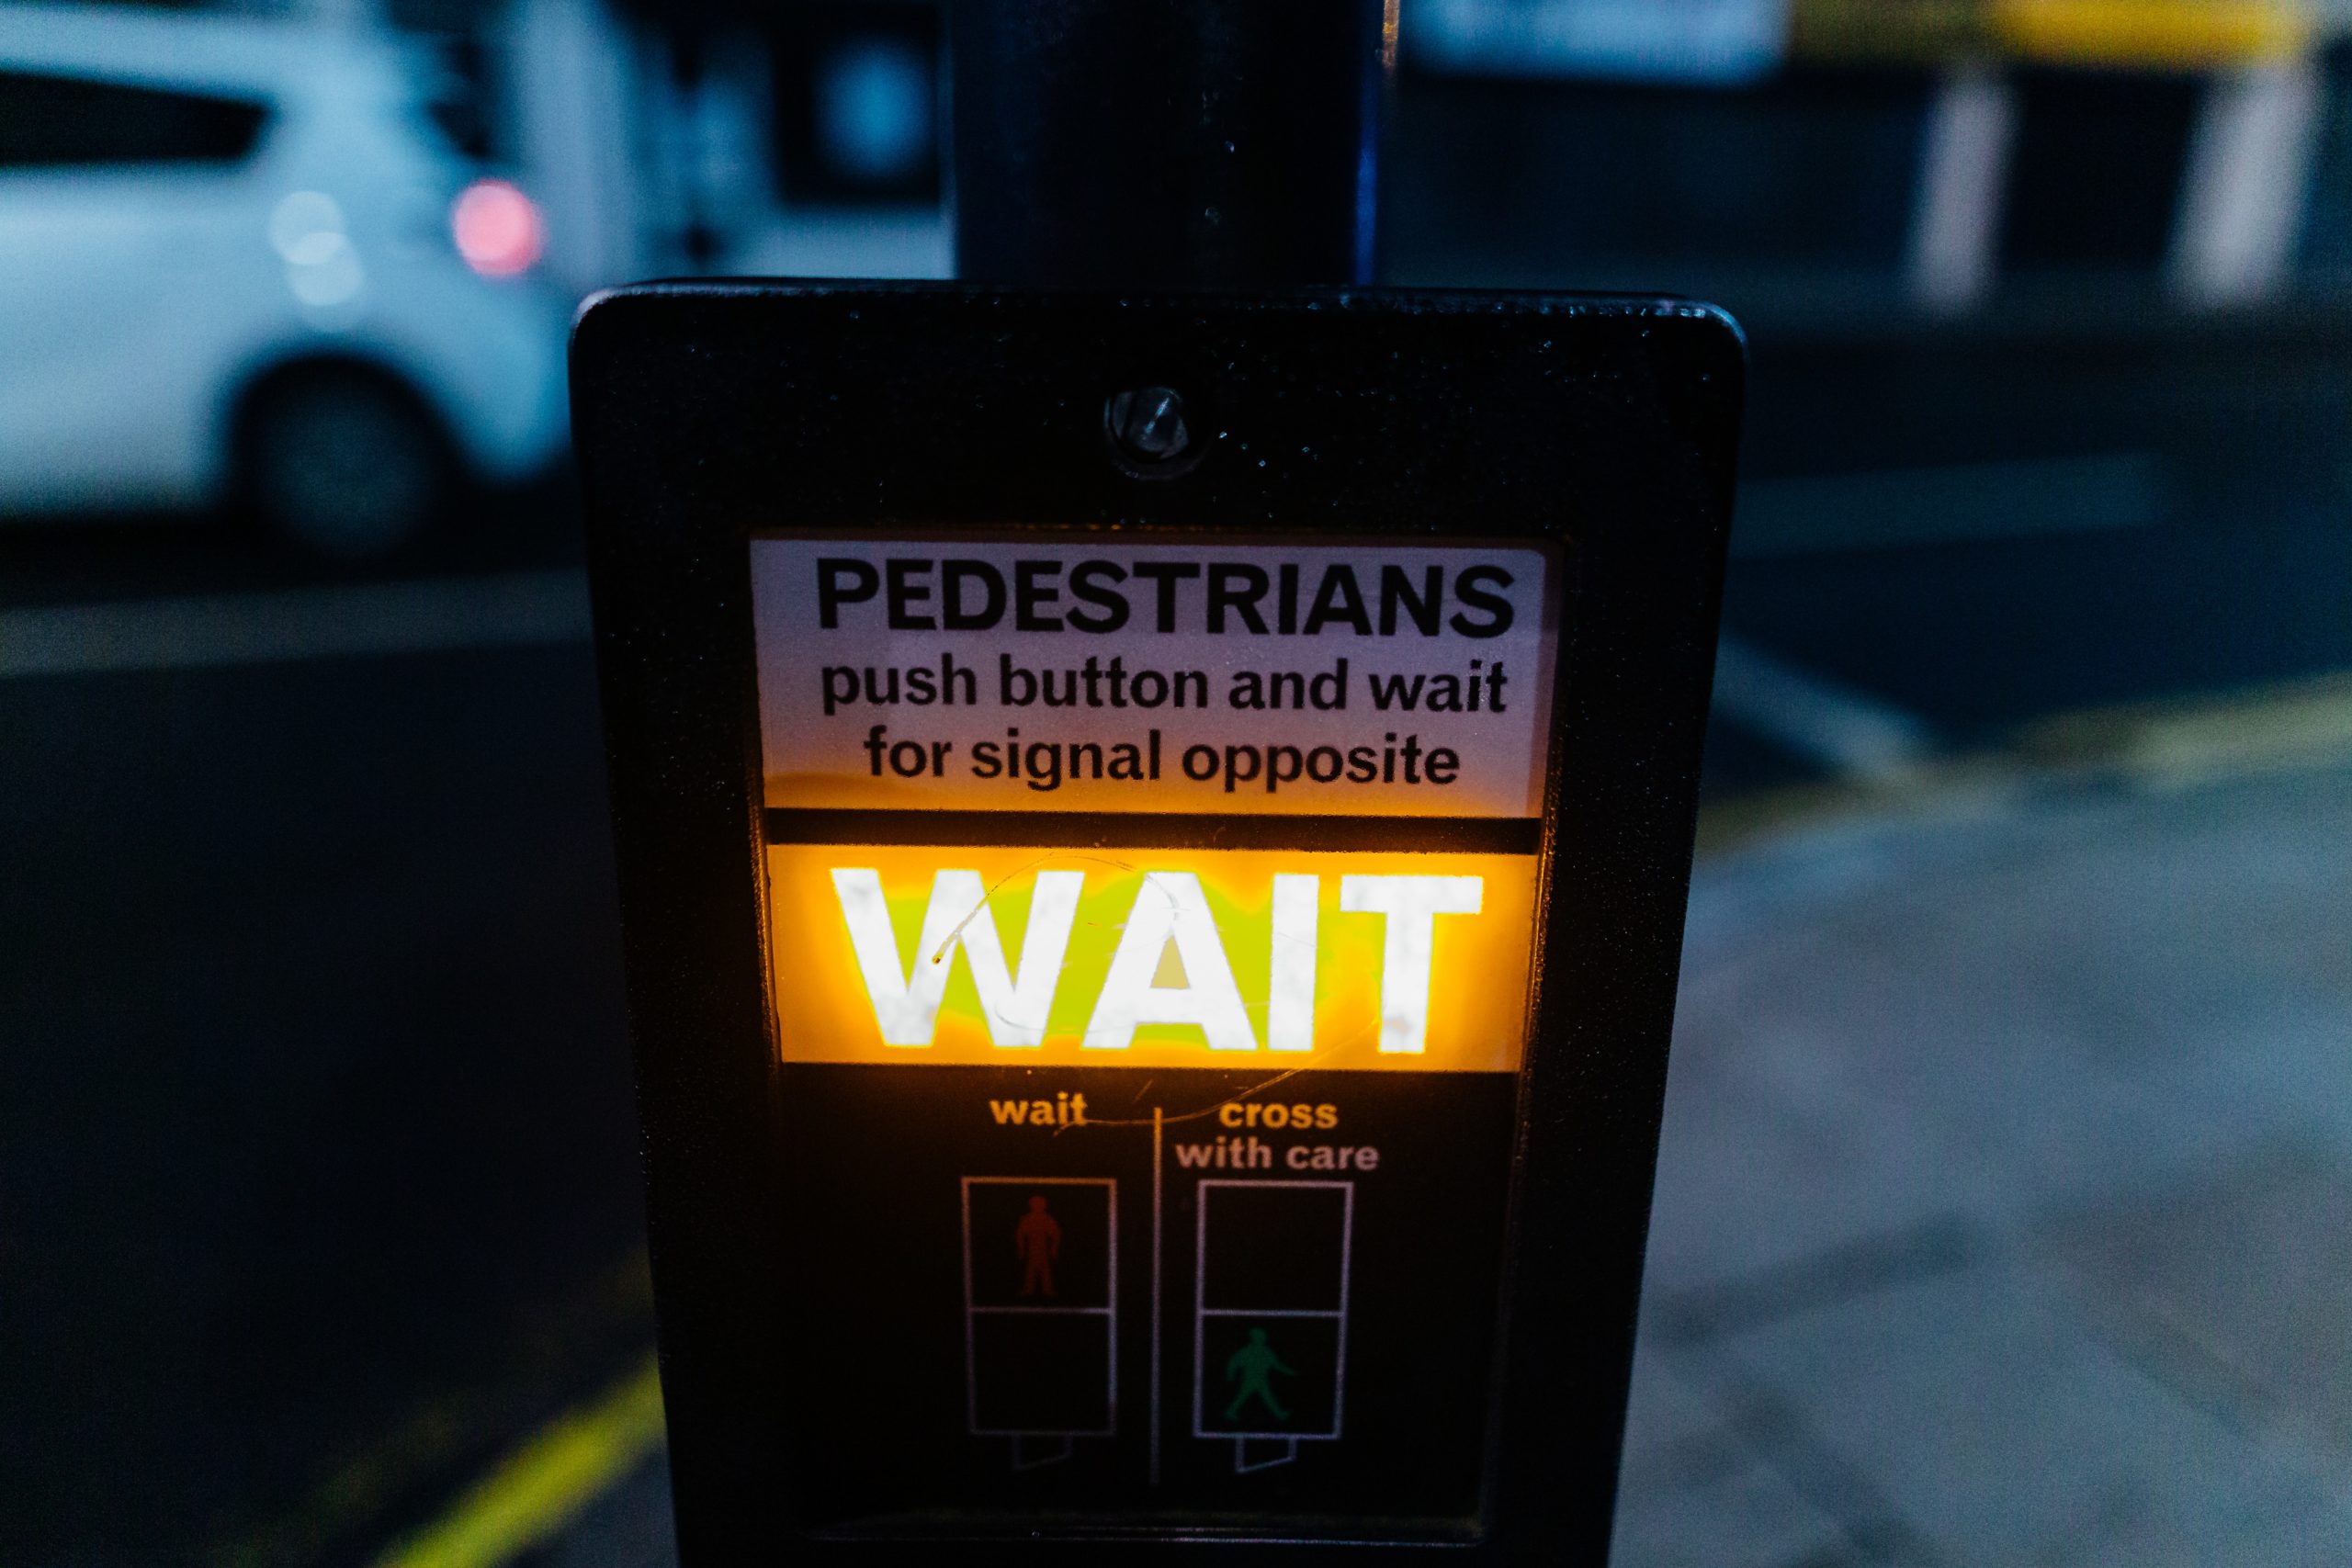 A 'pedestrian wait' sign lit up yellow.